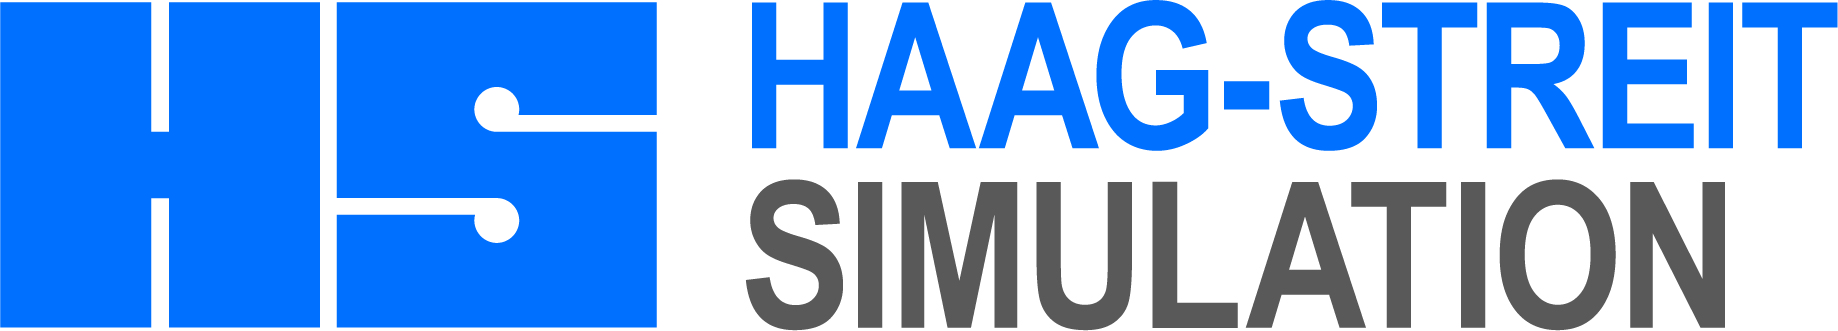 haag-streit-simulation_cmyk_hires